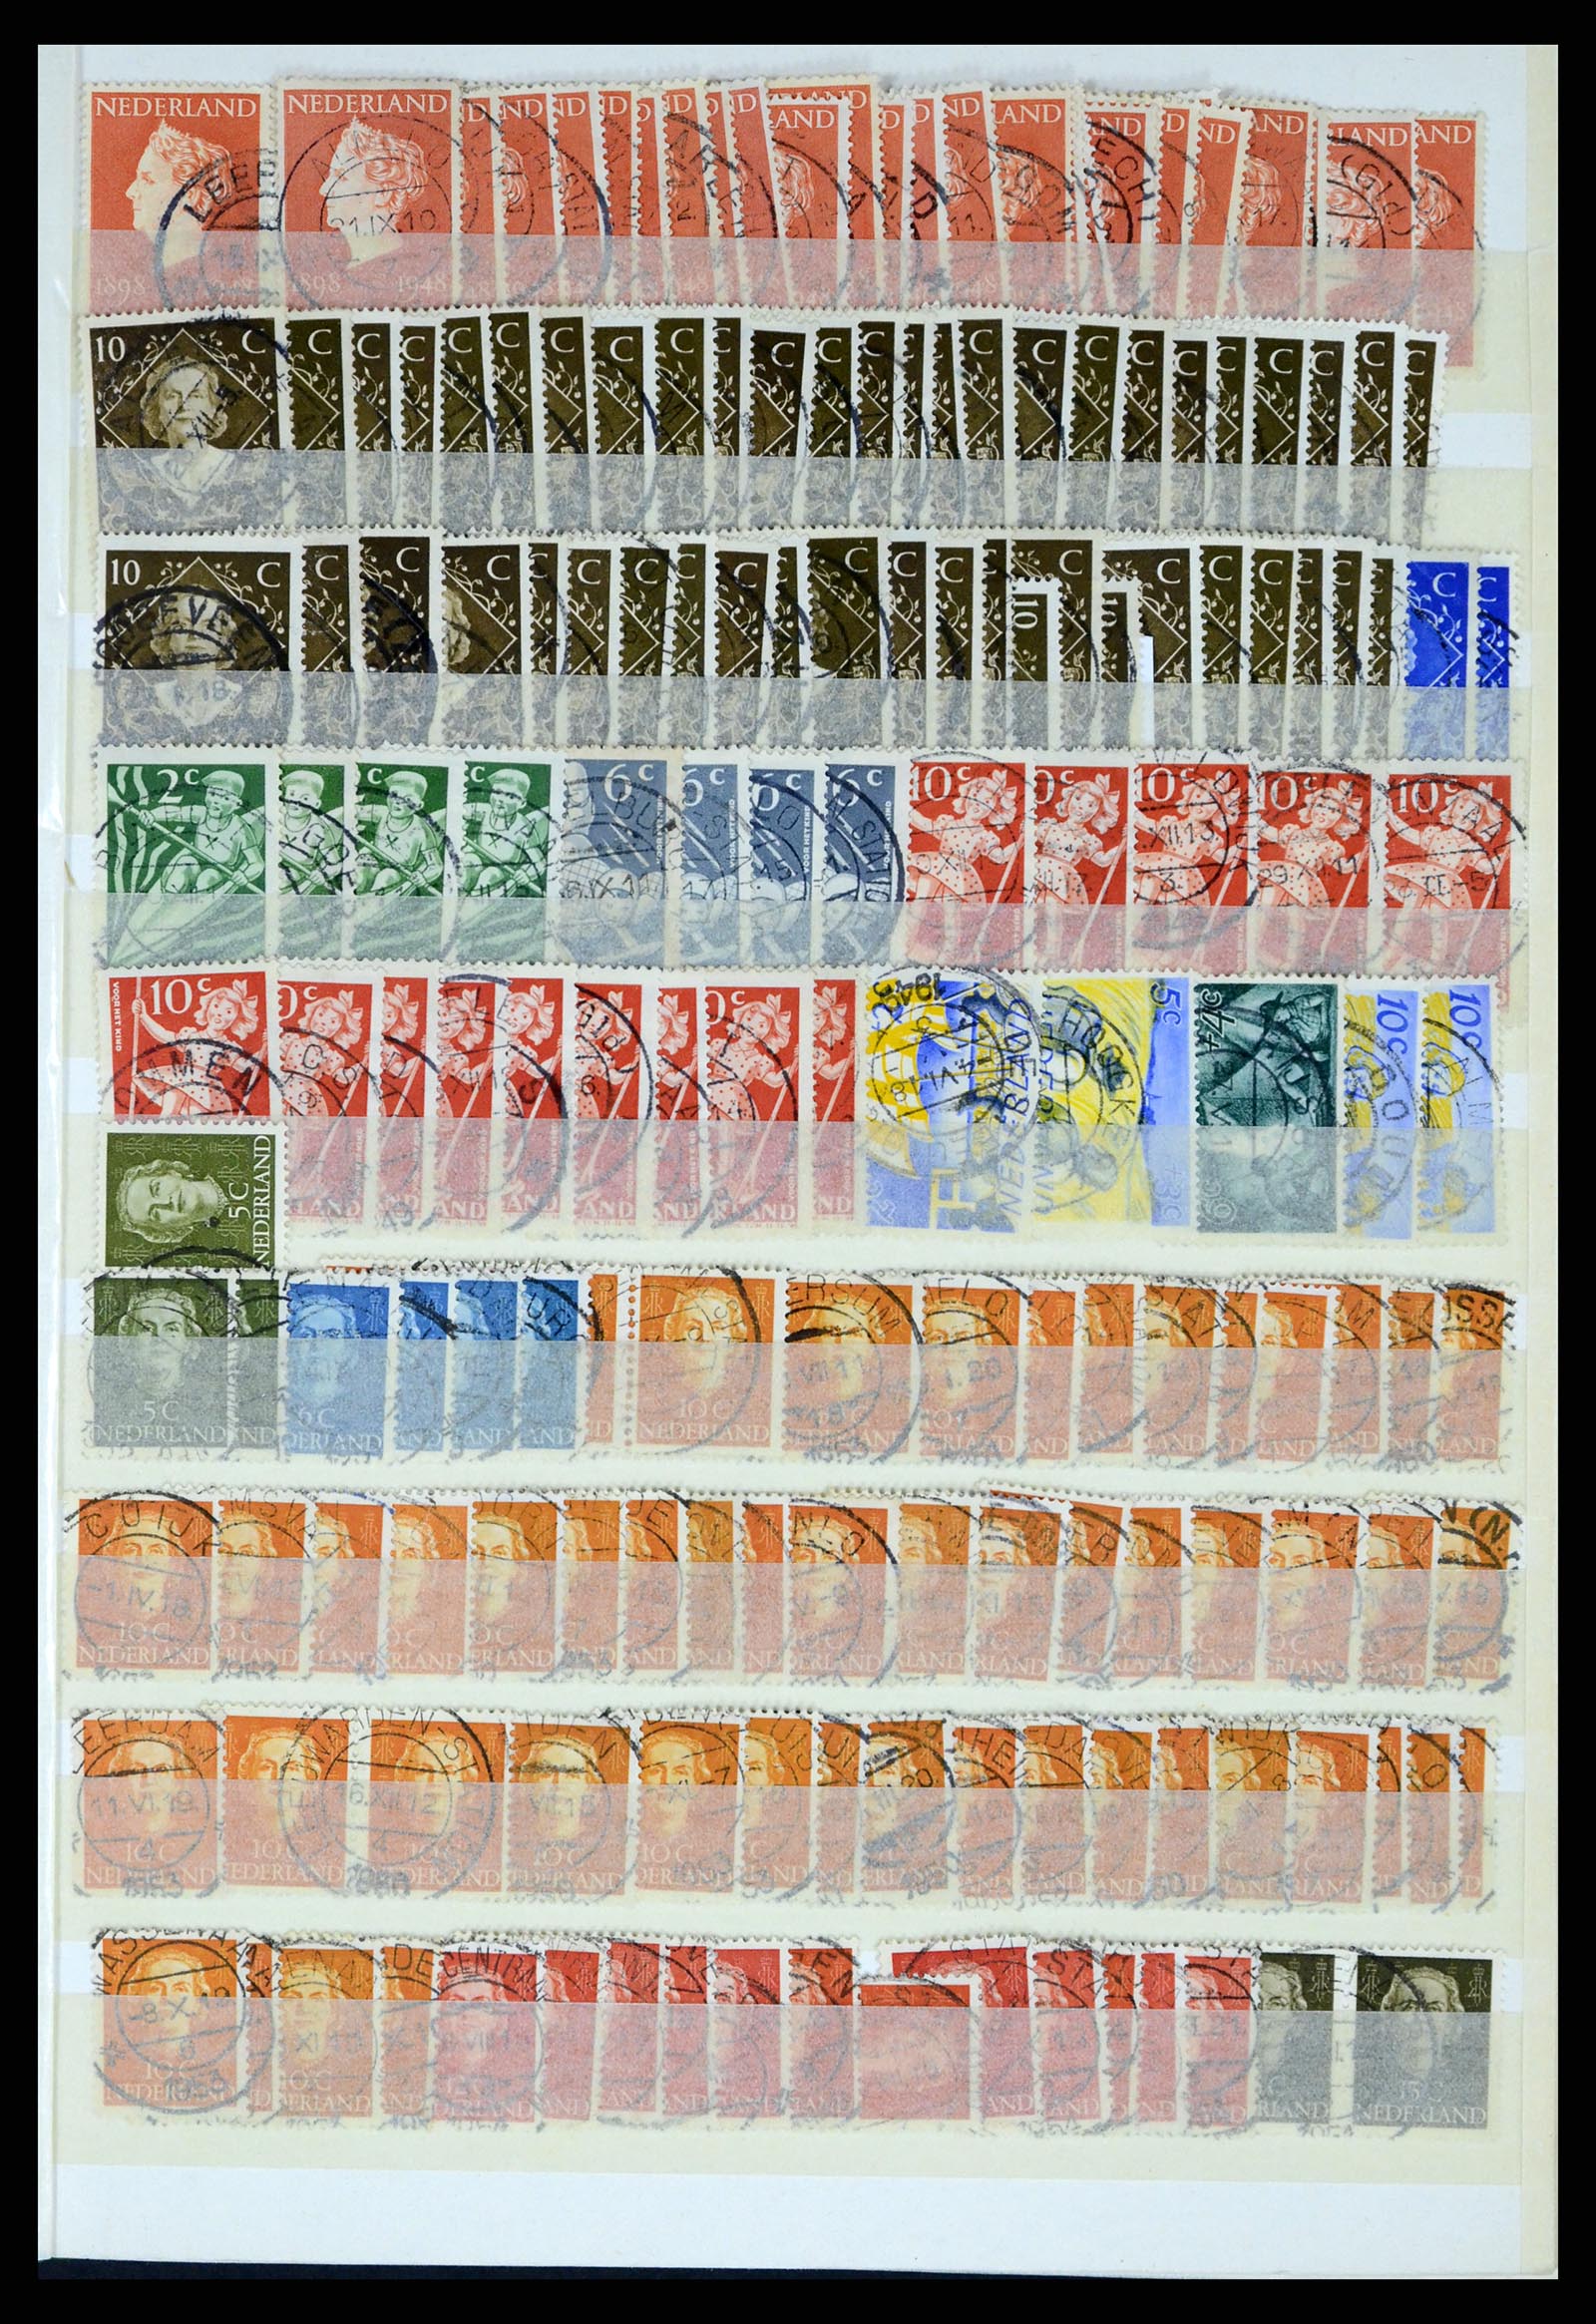 37424 045 - Postzegelverzameling 37424 Nederland kortebalk stempels.